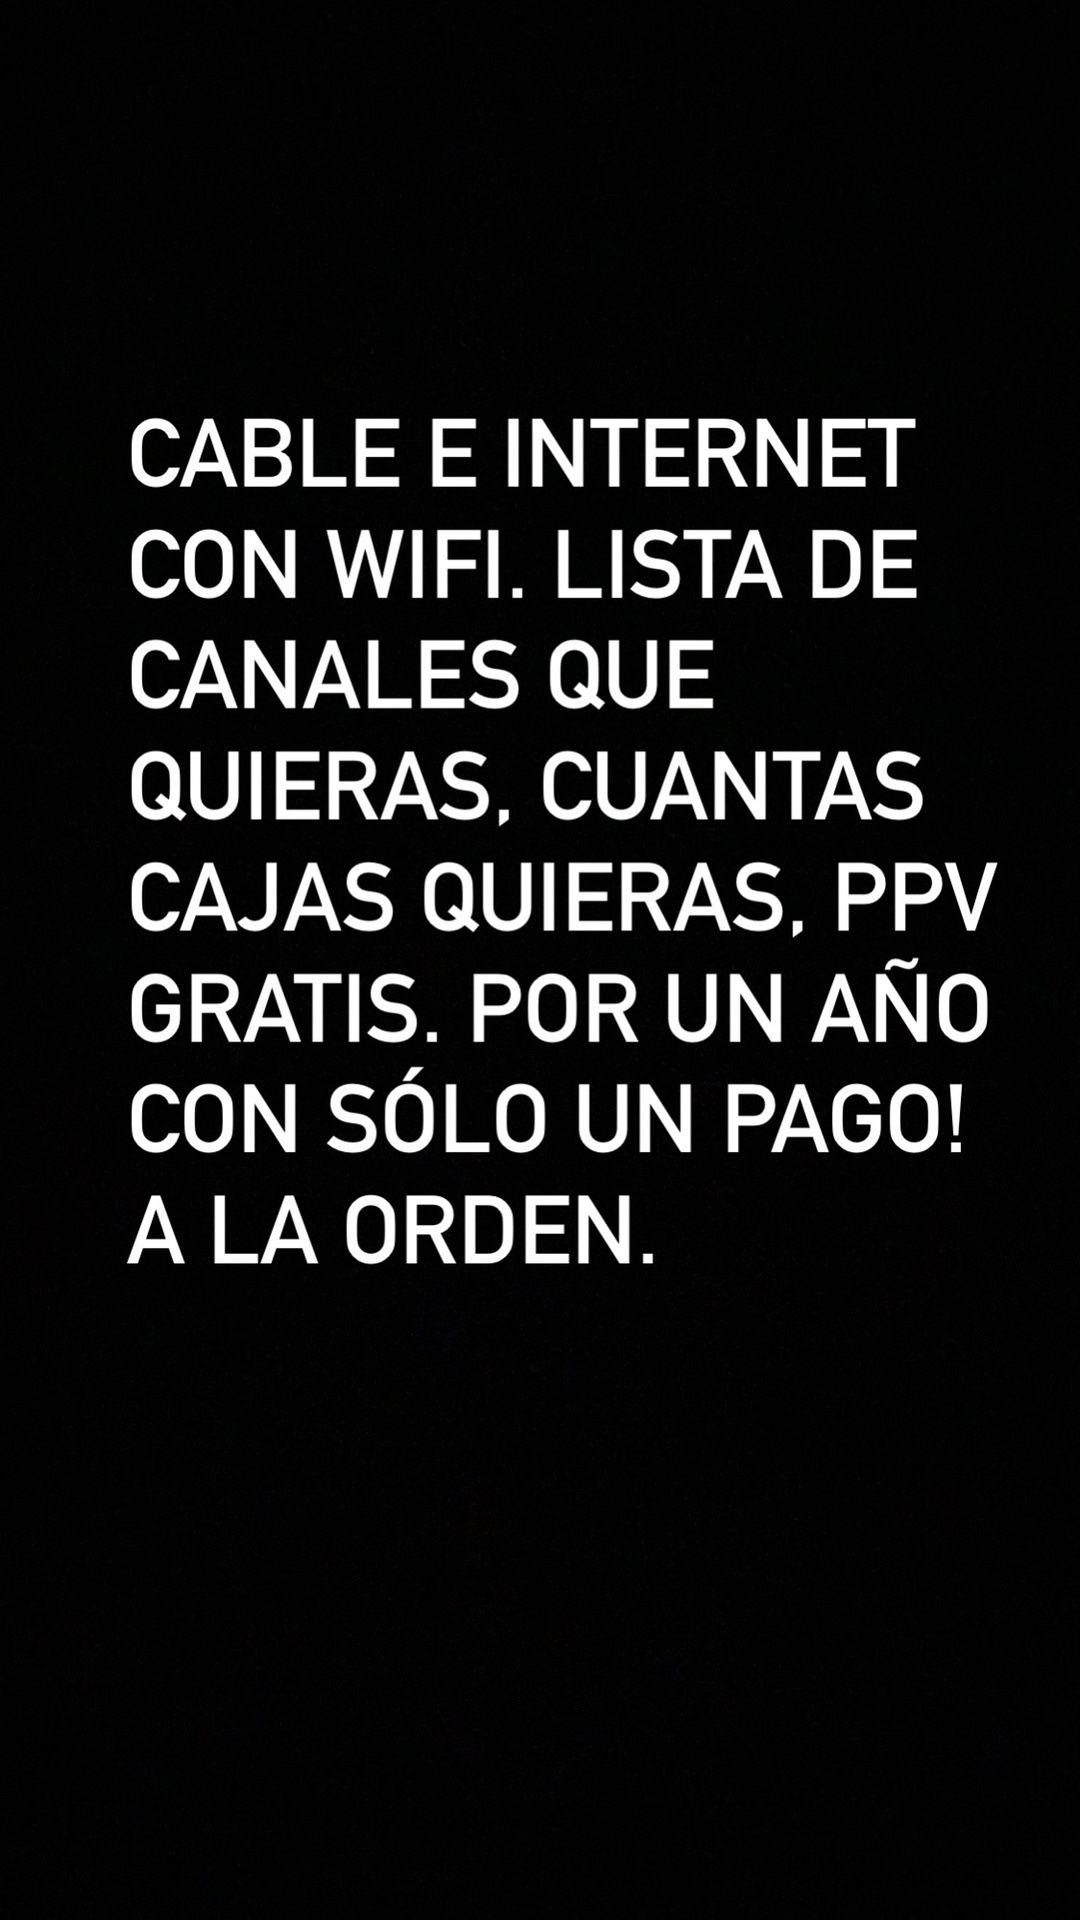 Cable e internet con wifi!